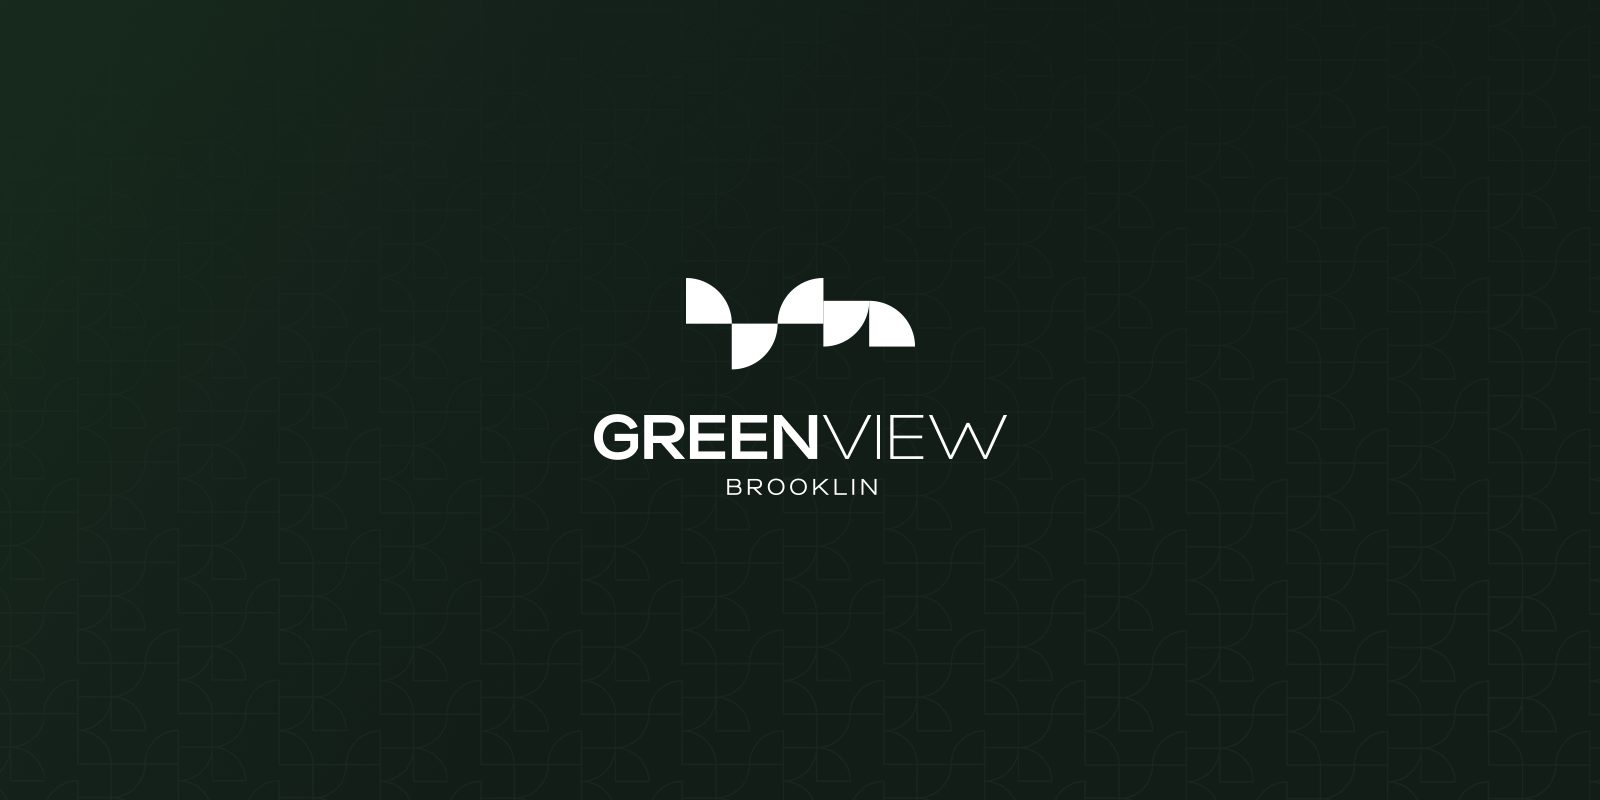 Greenview